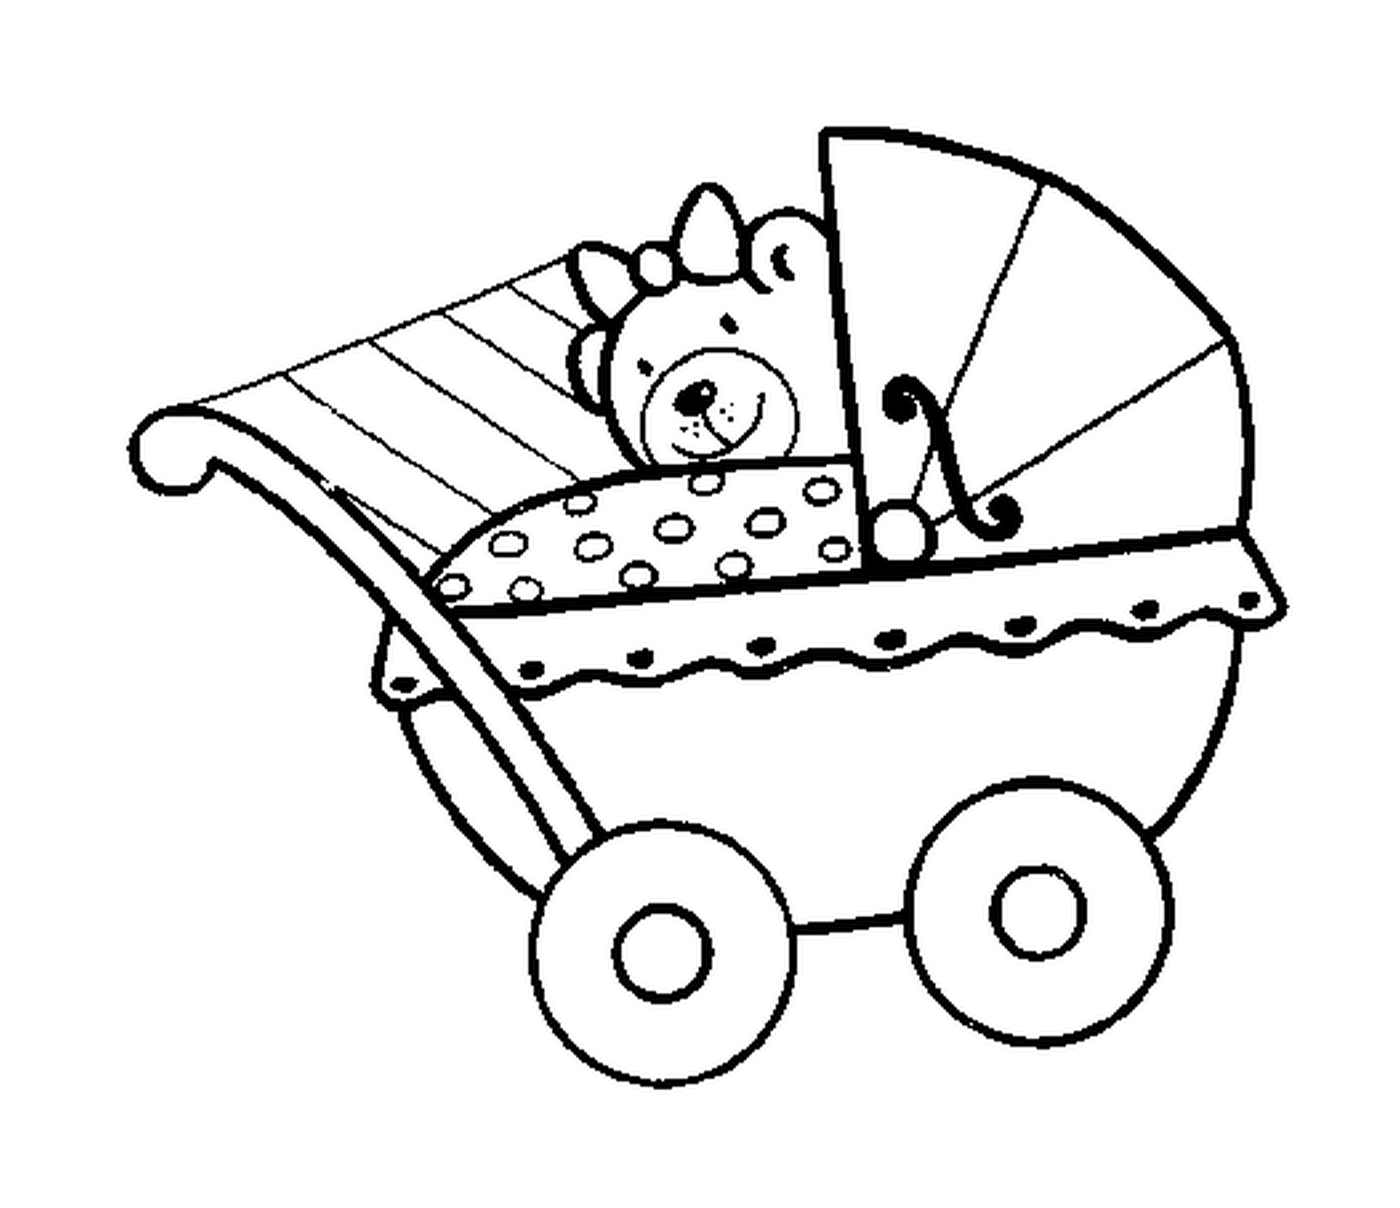  婴儿婴儿婴儿车 